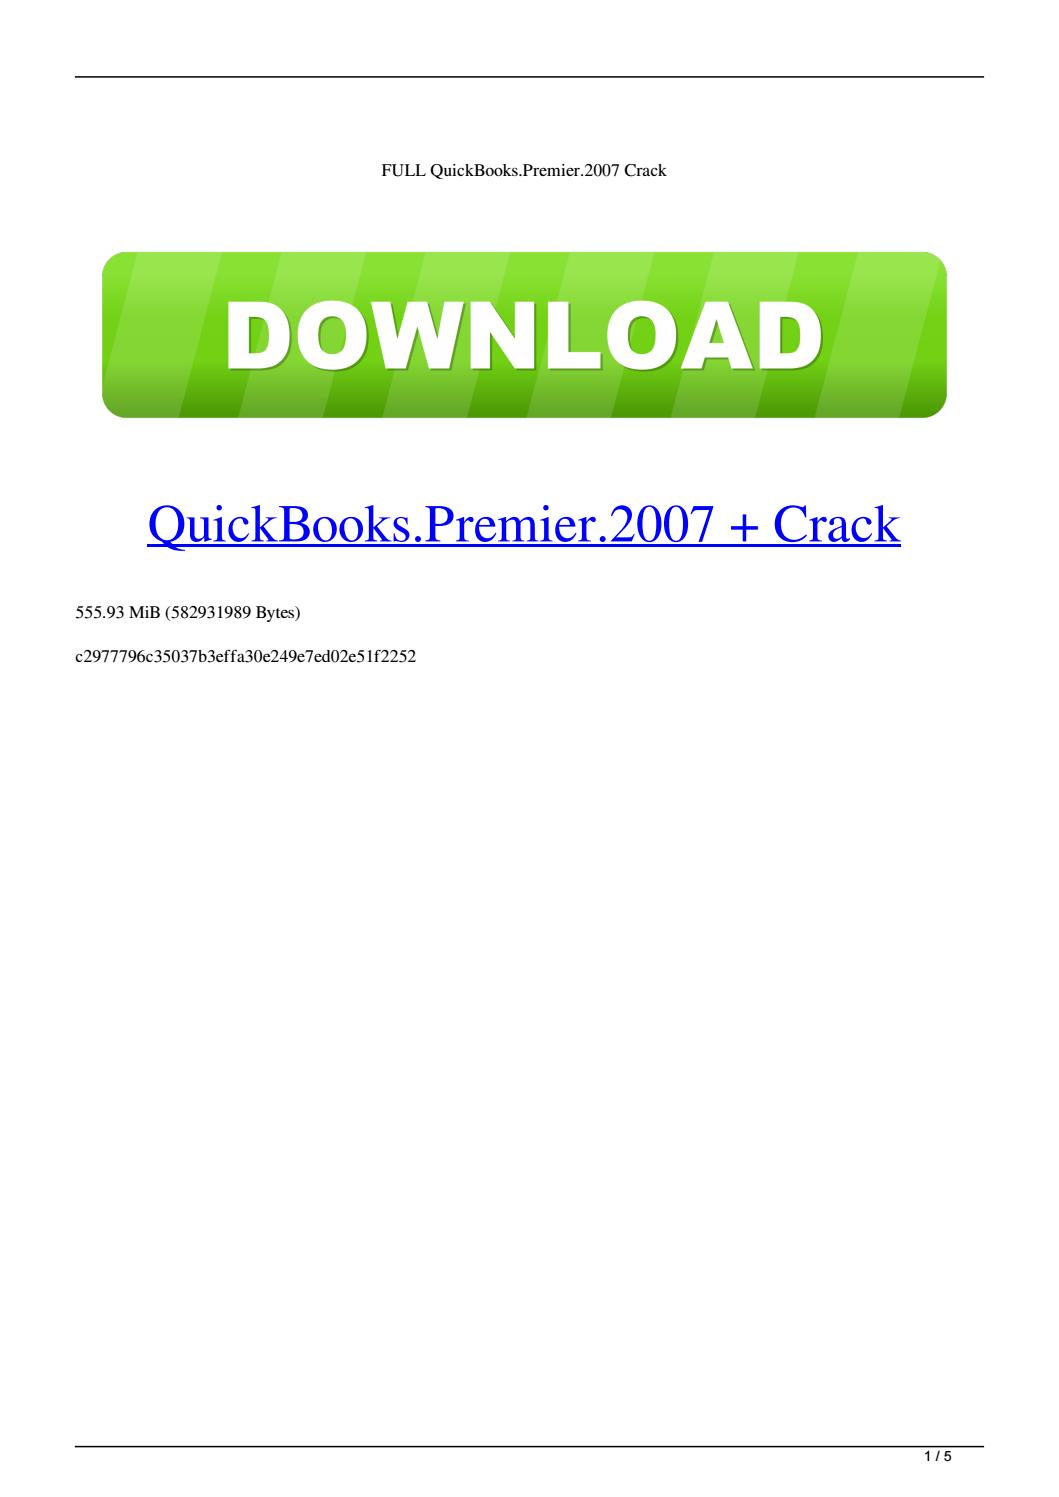 2008 quickbooks pro download